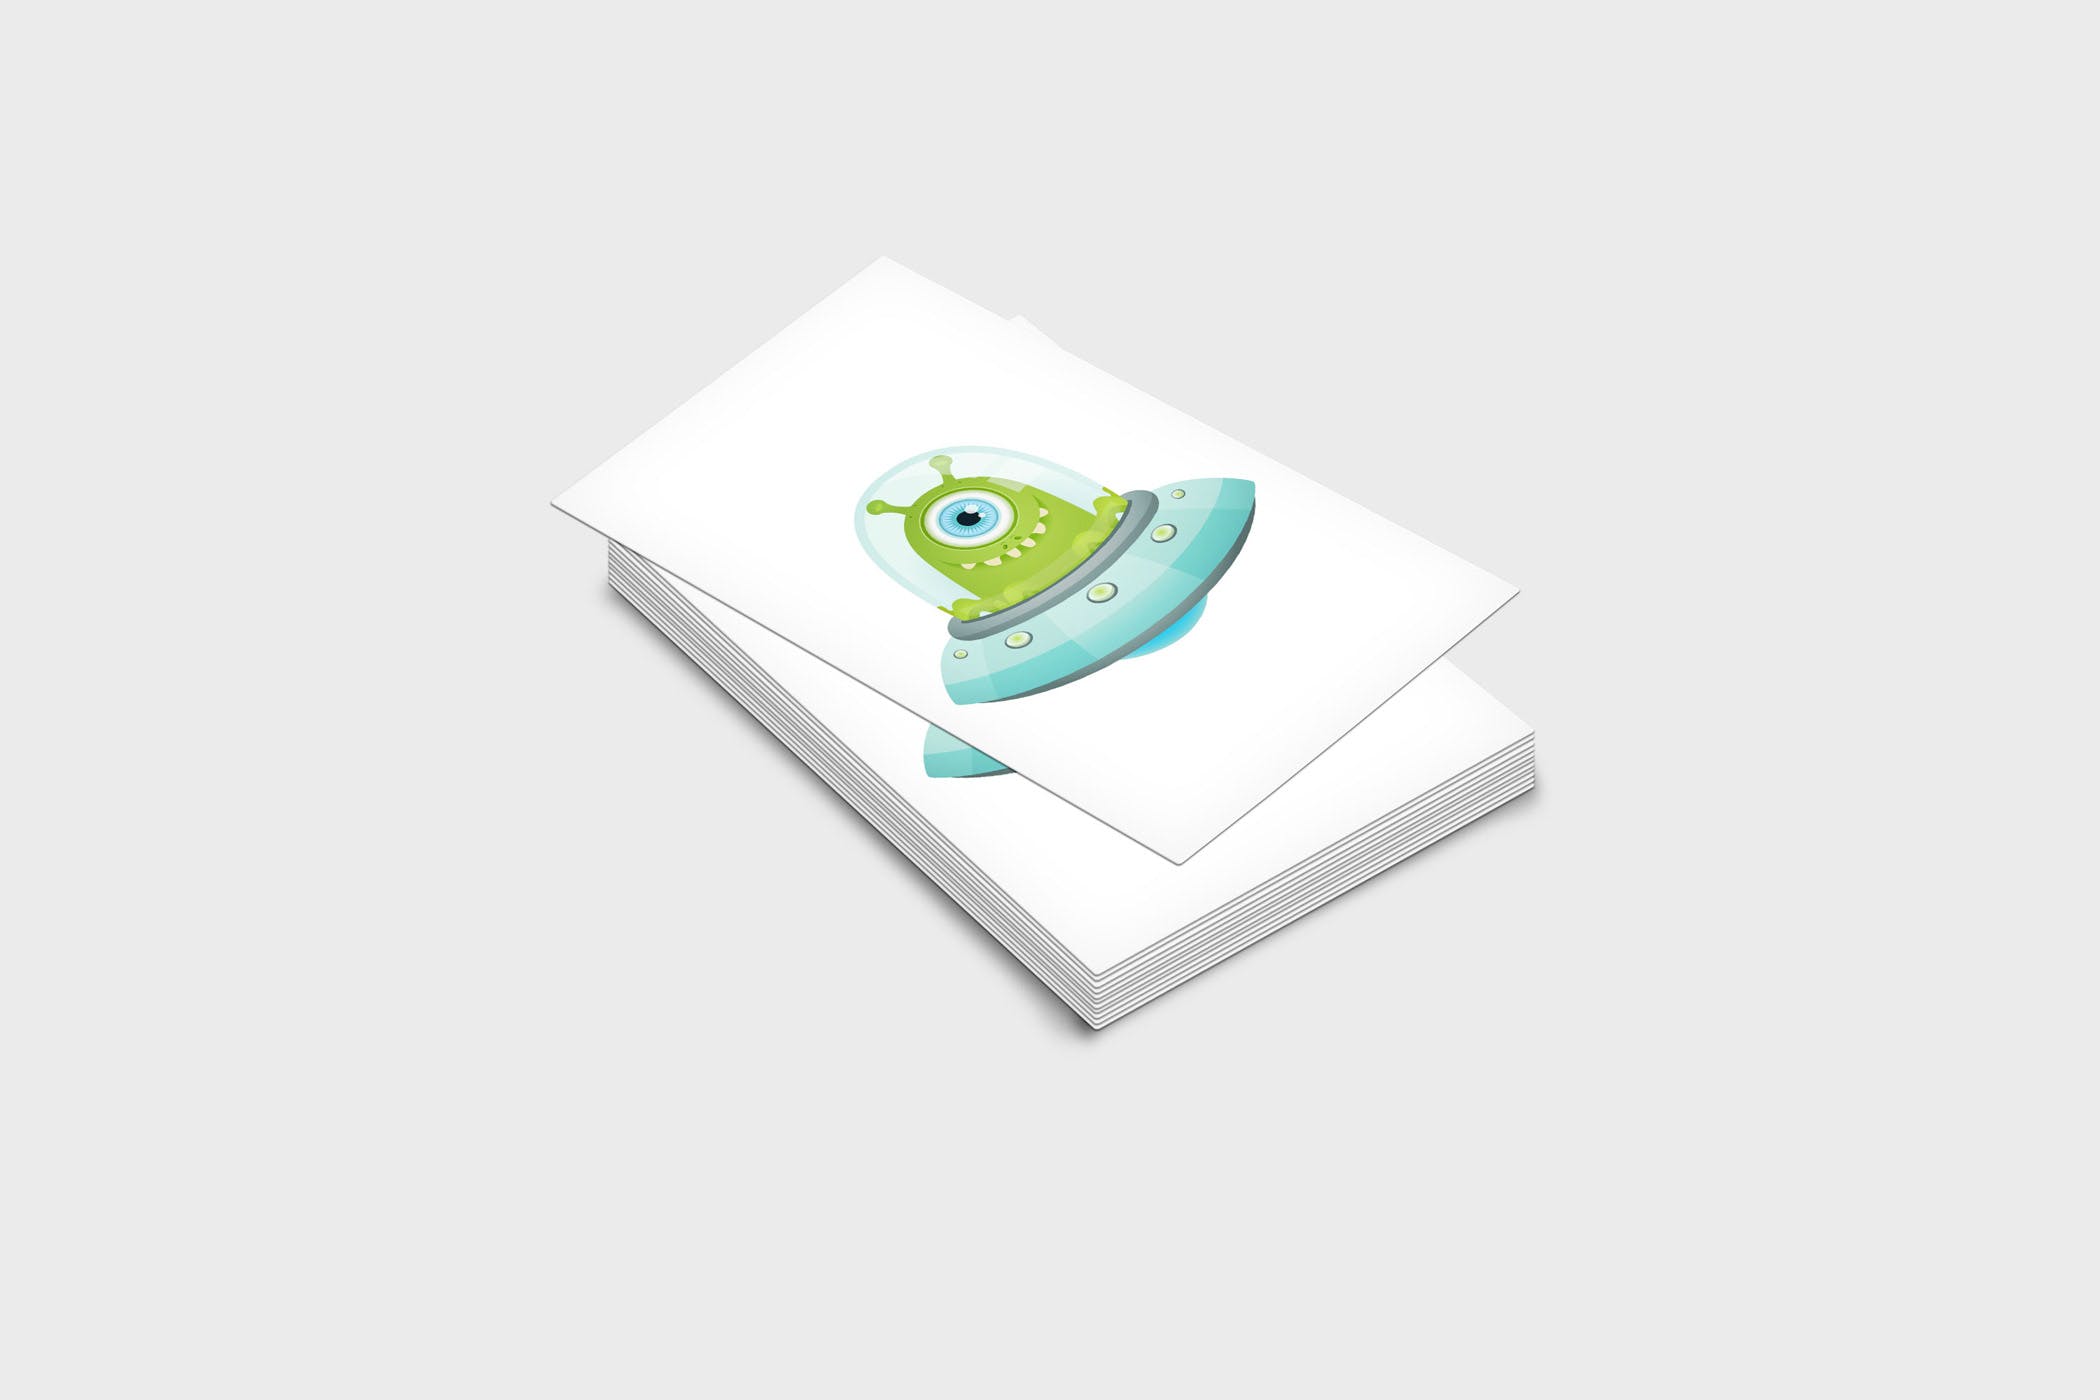 企业名片设计效果图展示样机非凡图库精选模板 4 Business Card Mock-Up Template插图(1)